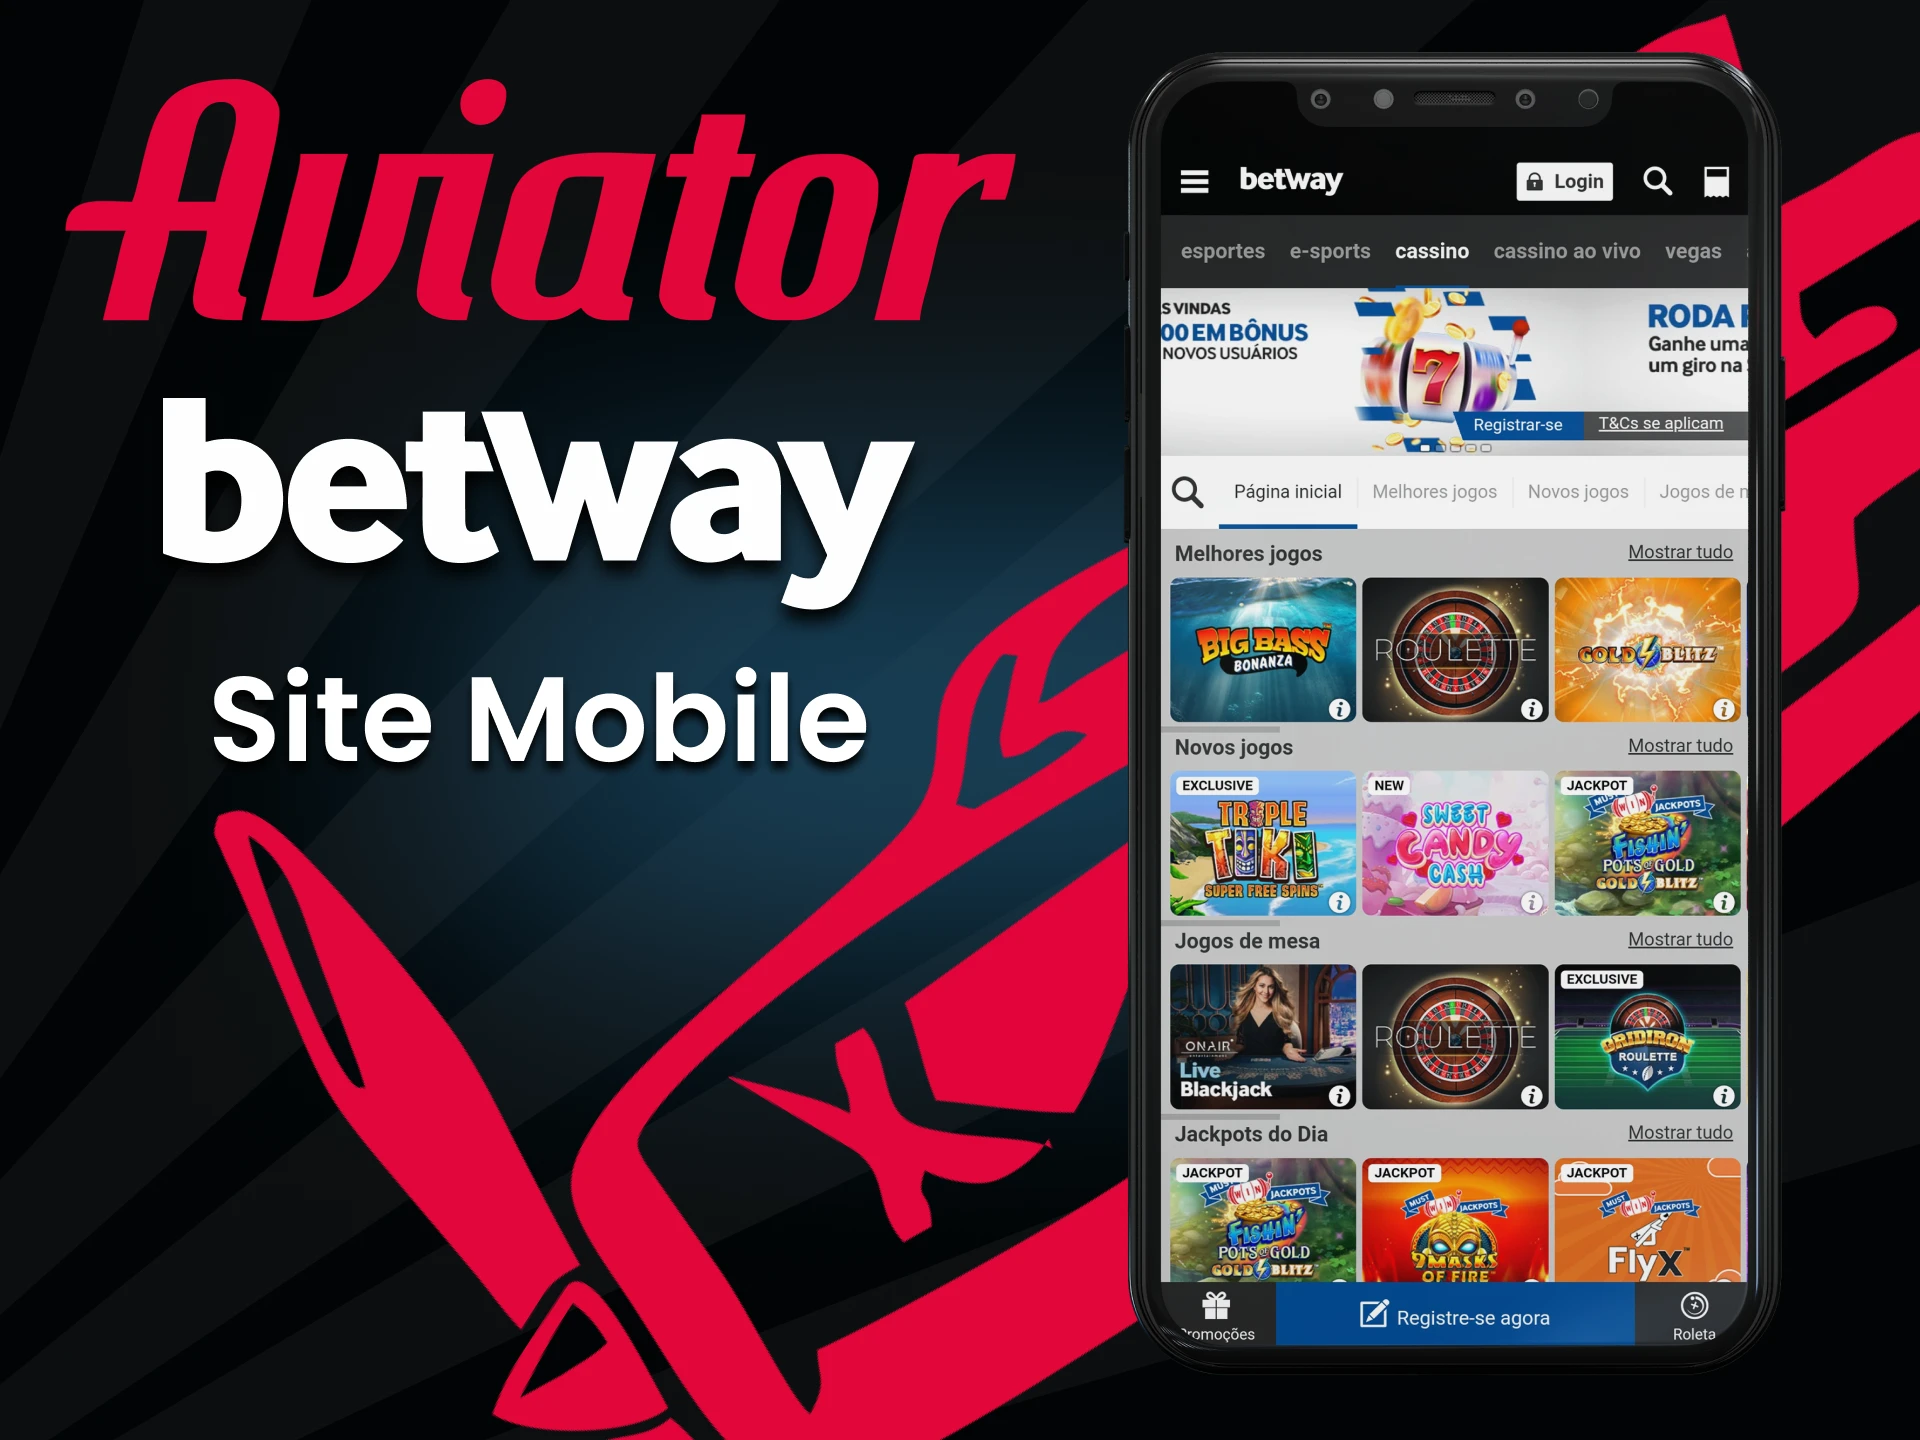 Visite a versão móvel do site da Betway.